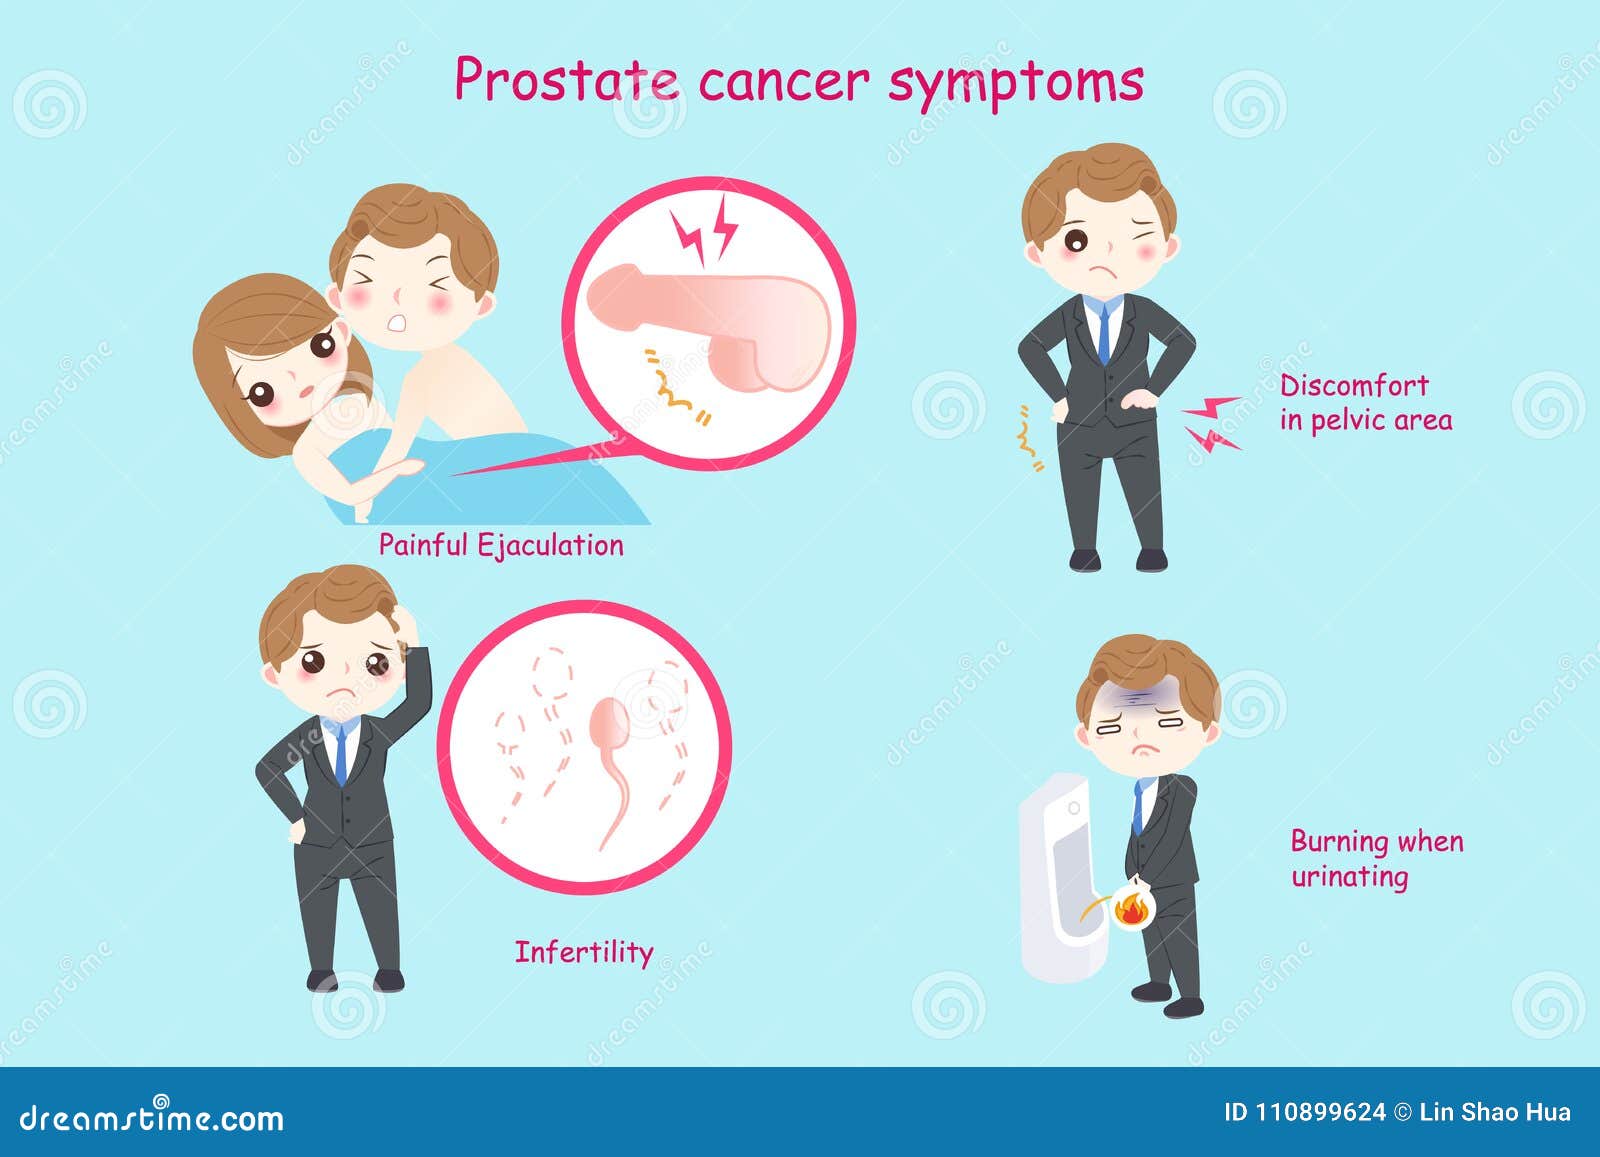 Cancer prostata tratamento injecao - Cancer de prostata sintomas iniciais